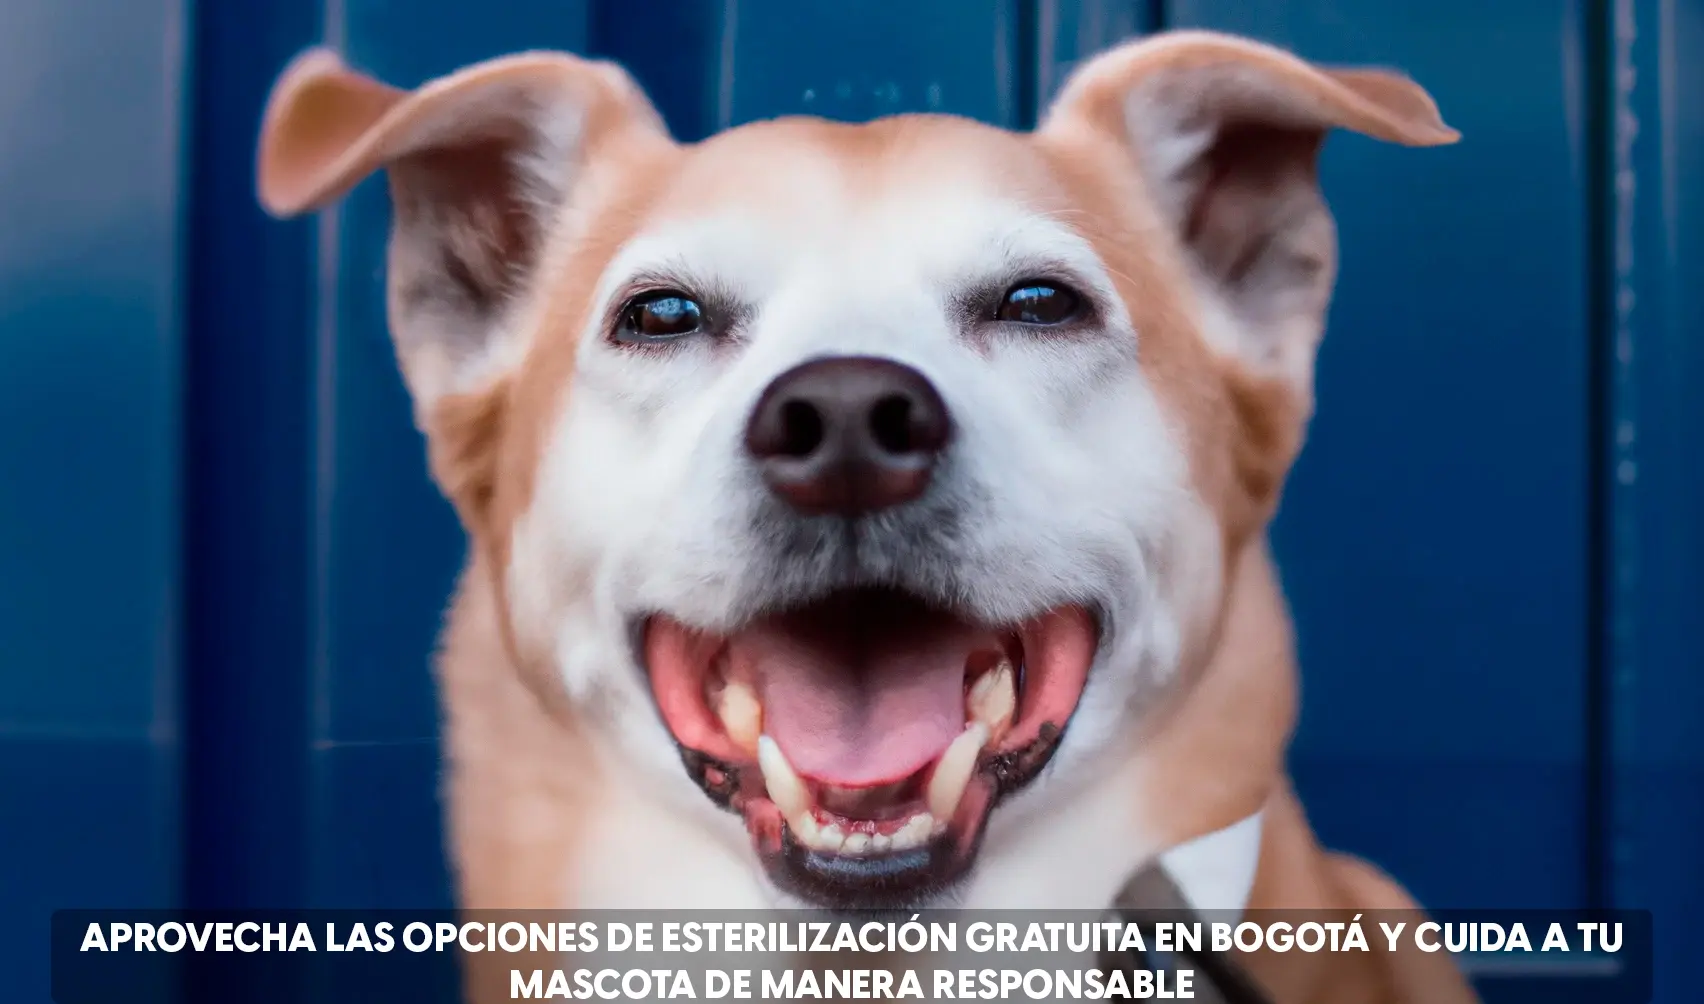 ¿Quieres esterilizar a tu mascota GRATIS en Bogotá? Aquí te decimos dónde ir